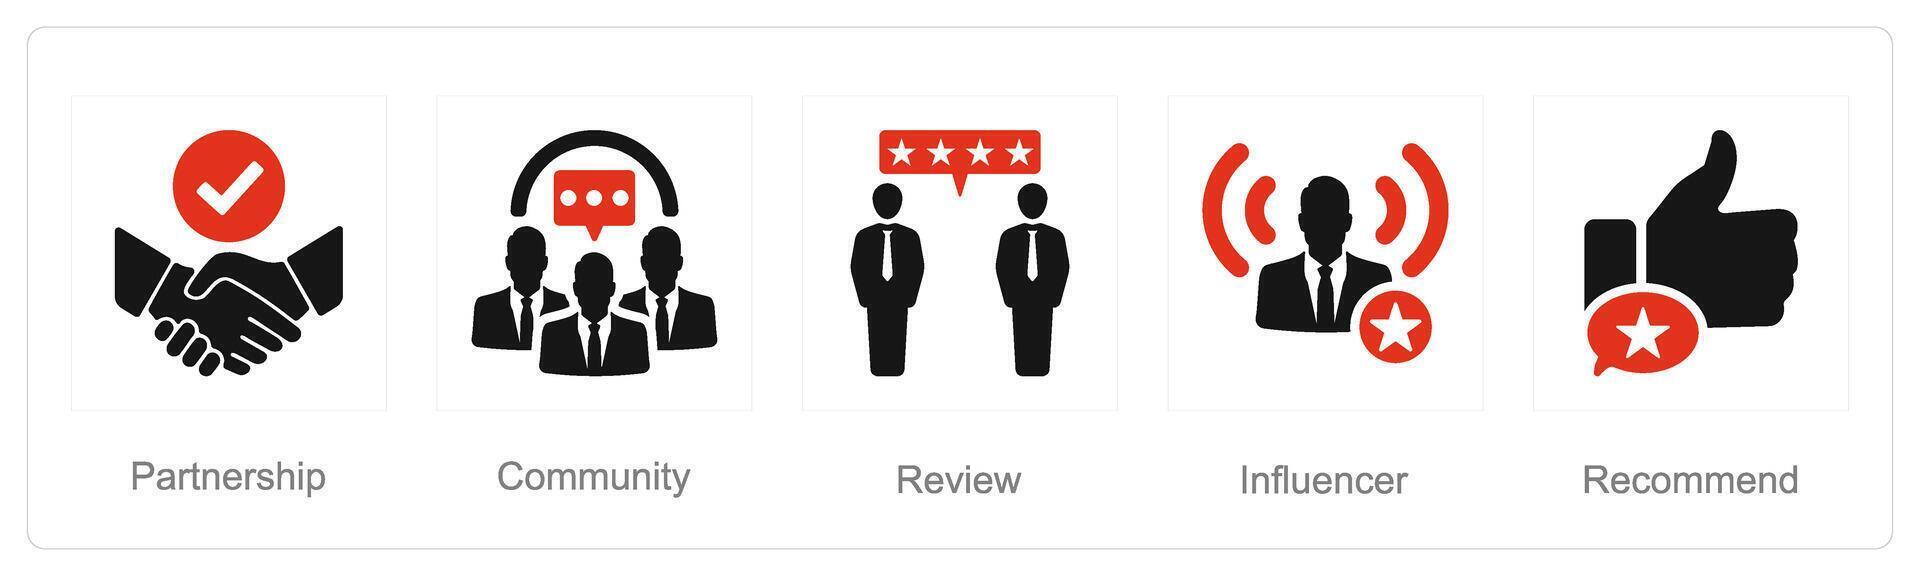 en uppsättning av 5 influencer ikoner som partnerskap, gemenskap, recension vektor